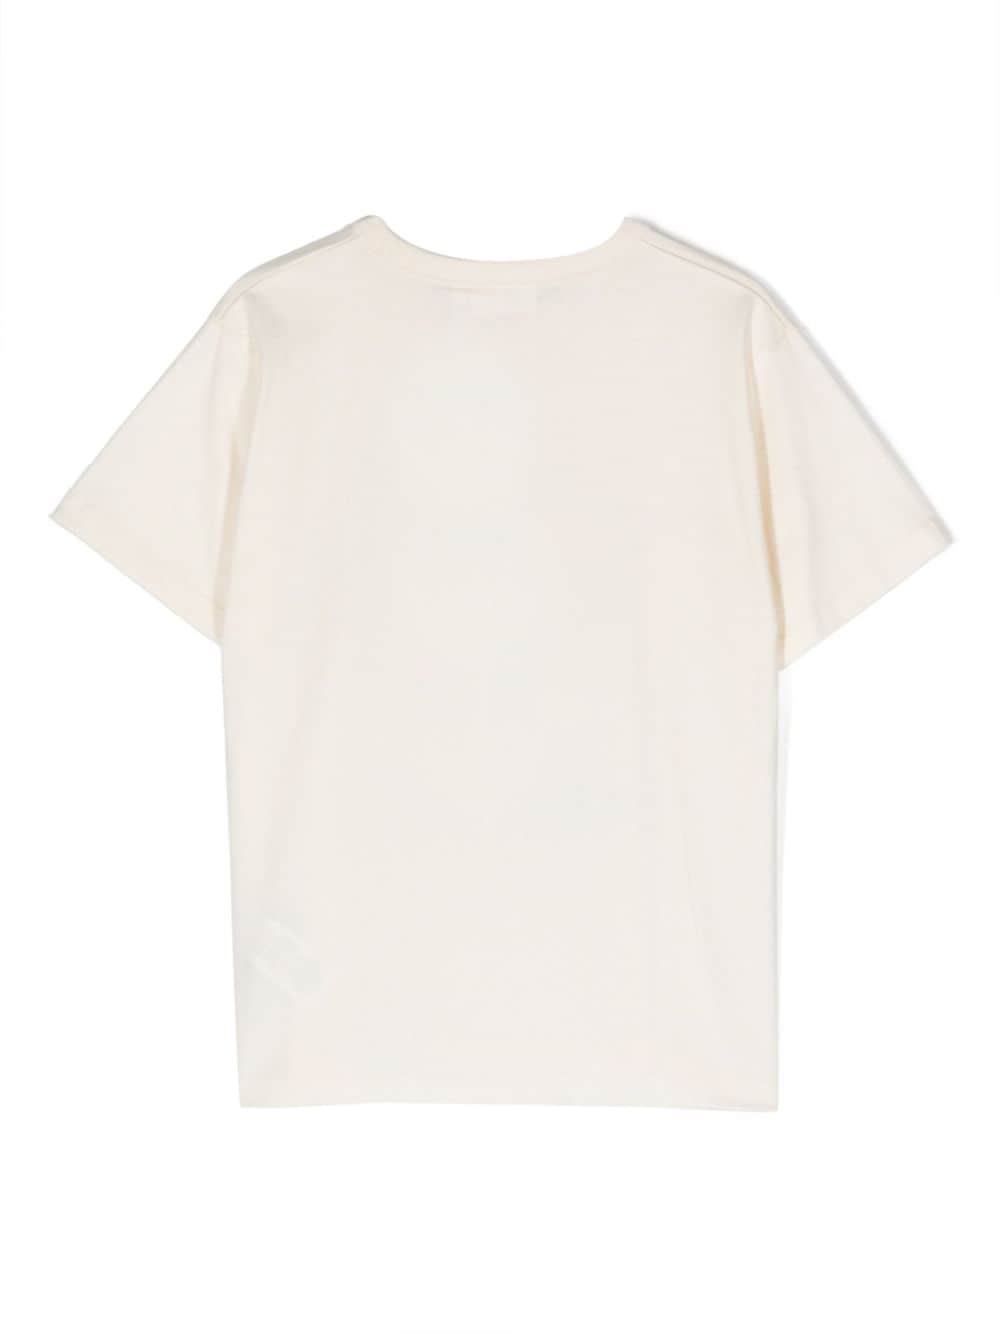 T-shirt bambino bianca avorio